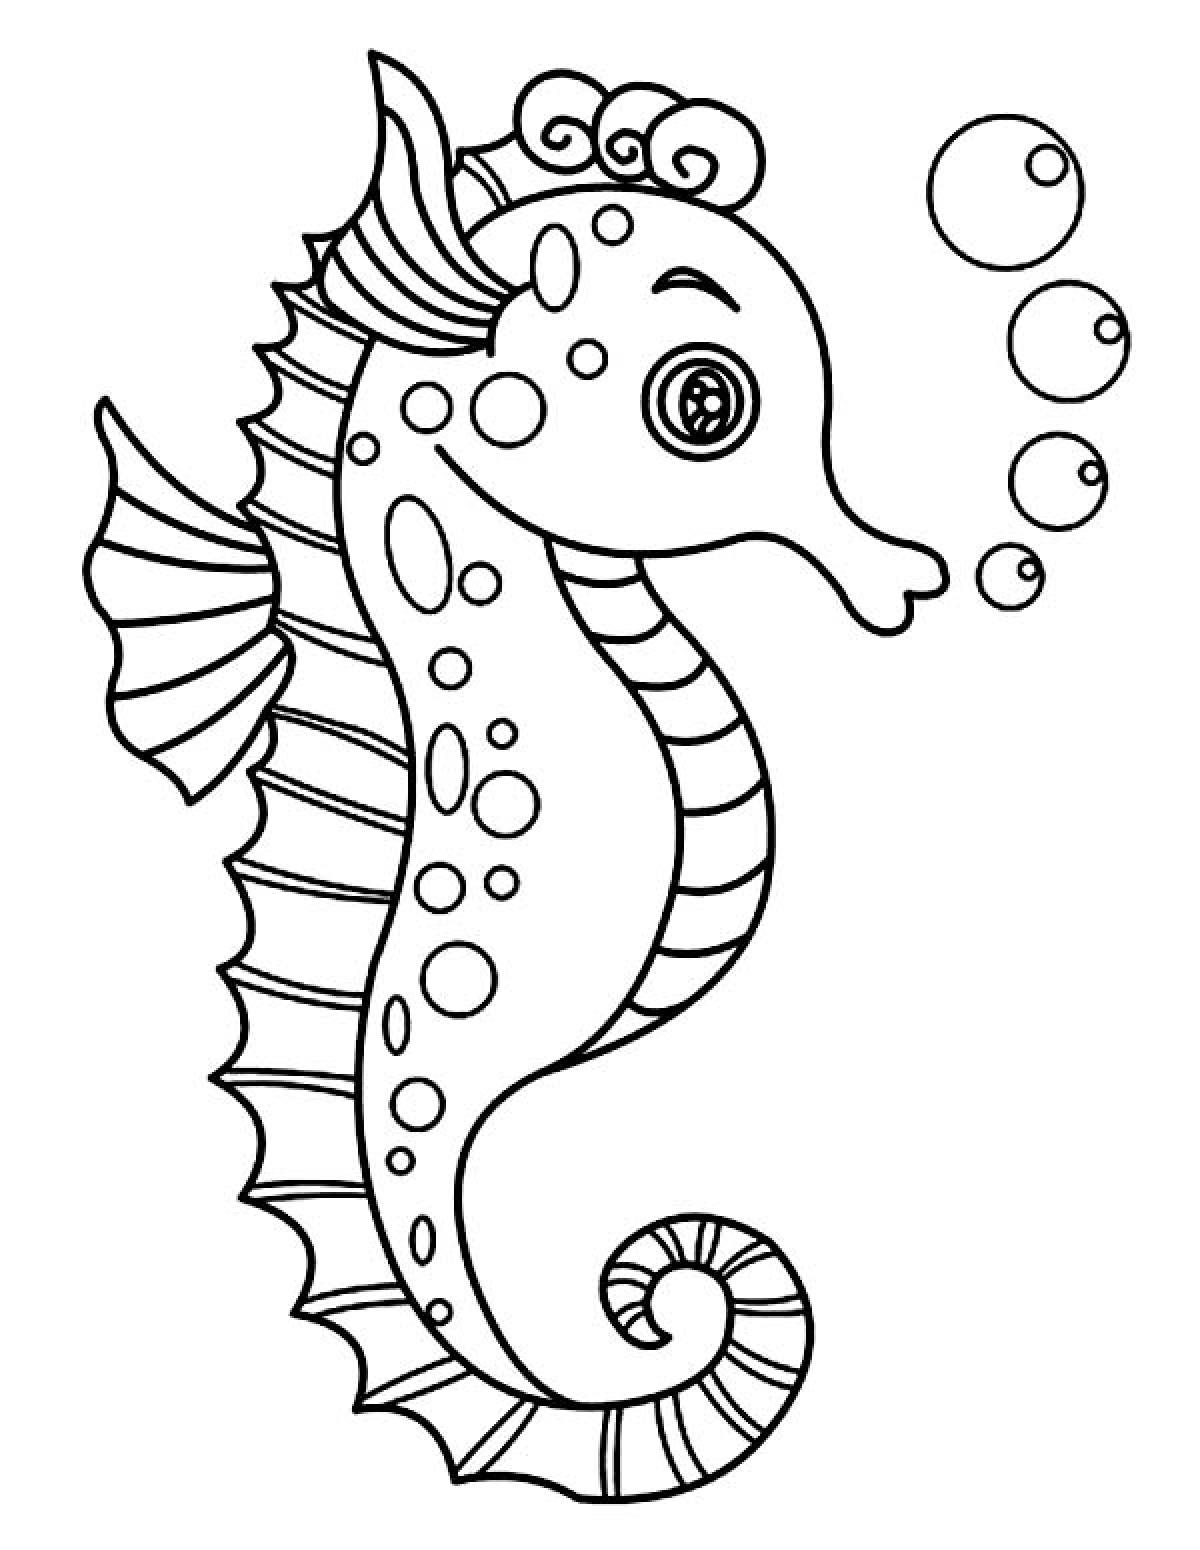 Seahorse раскраска для детей